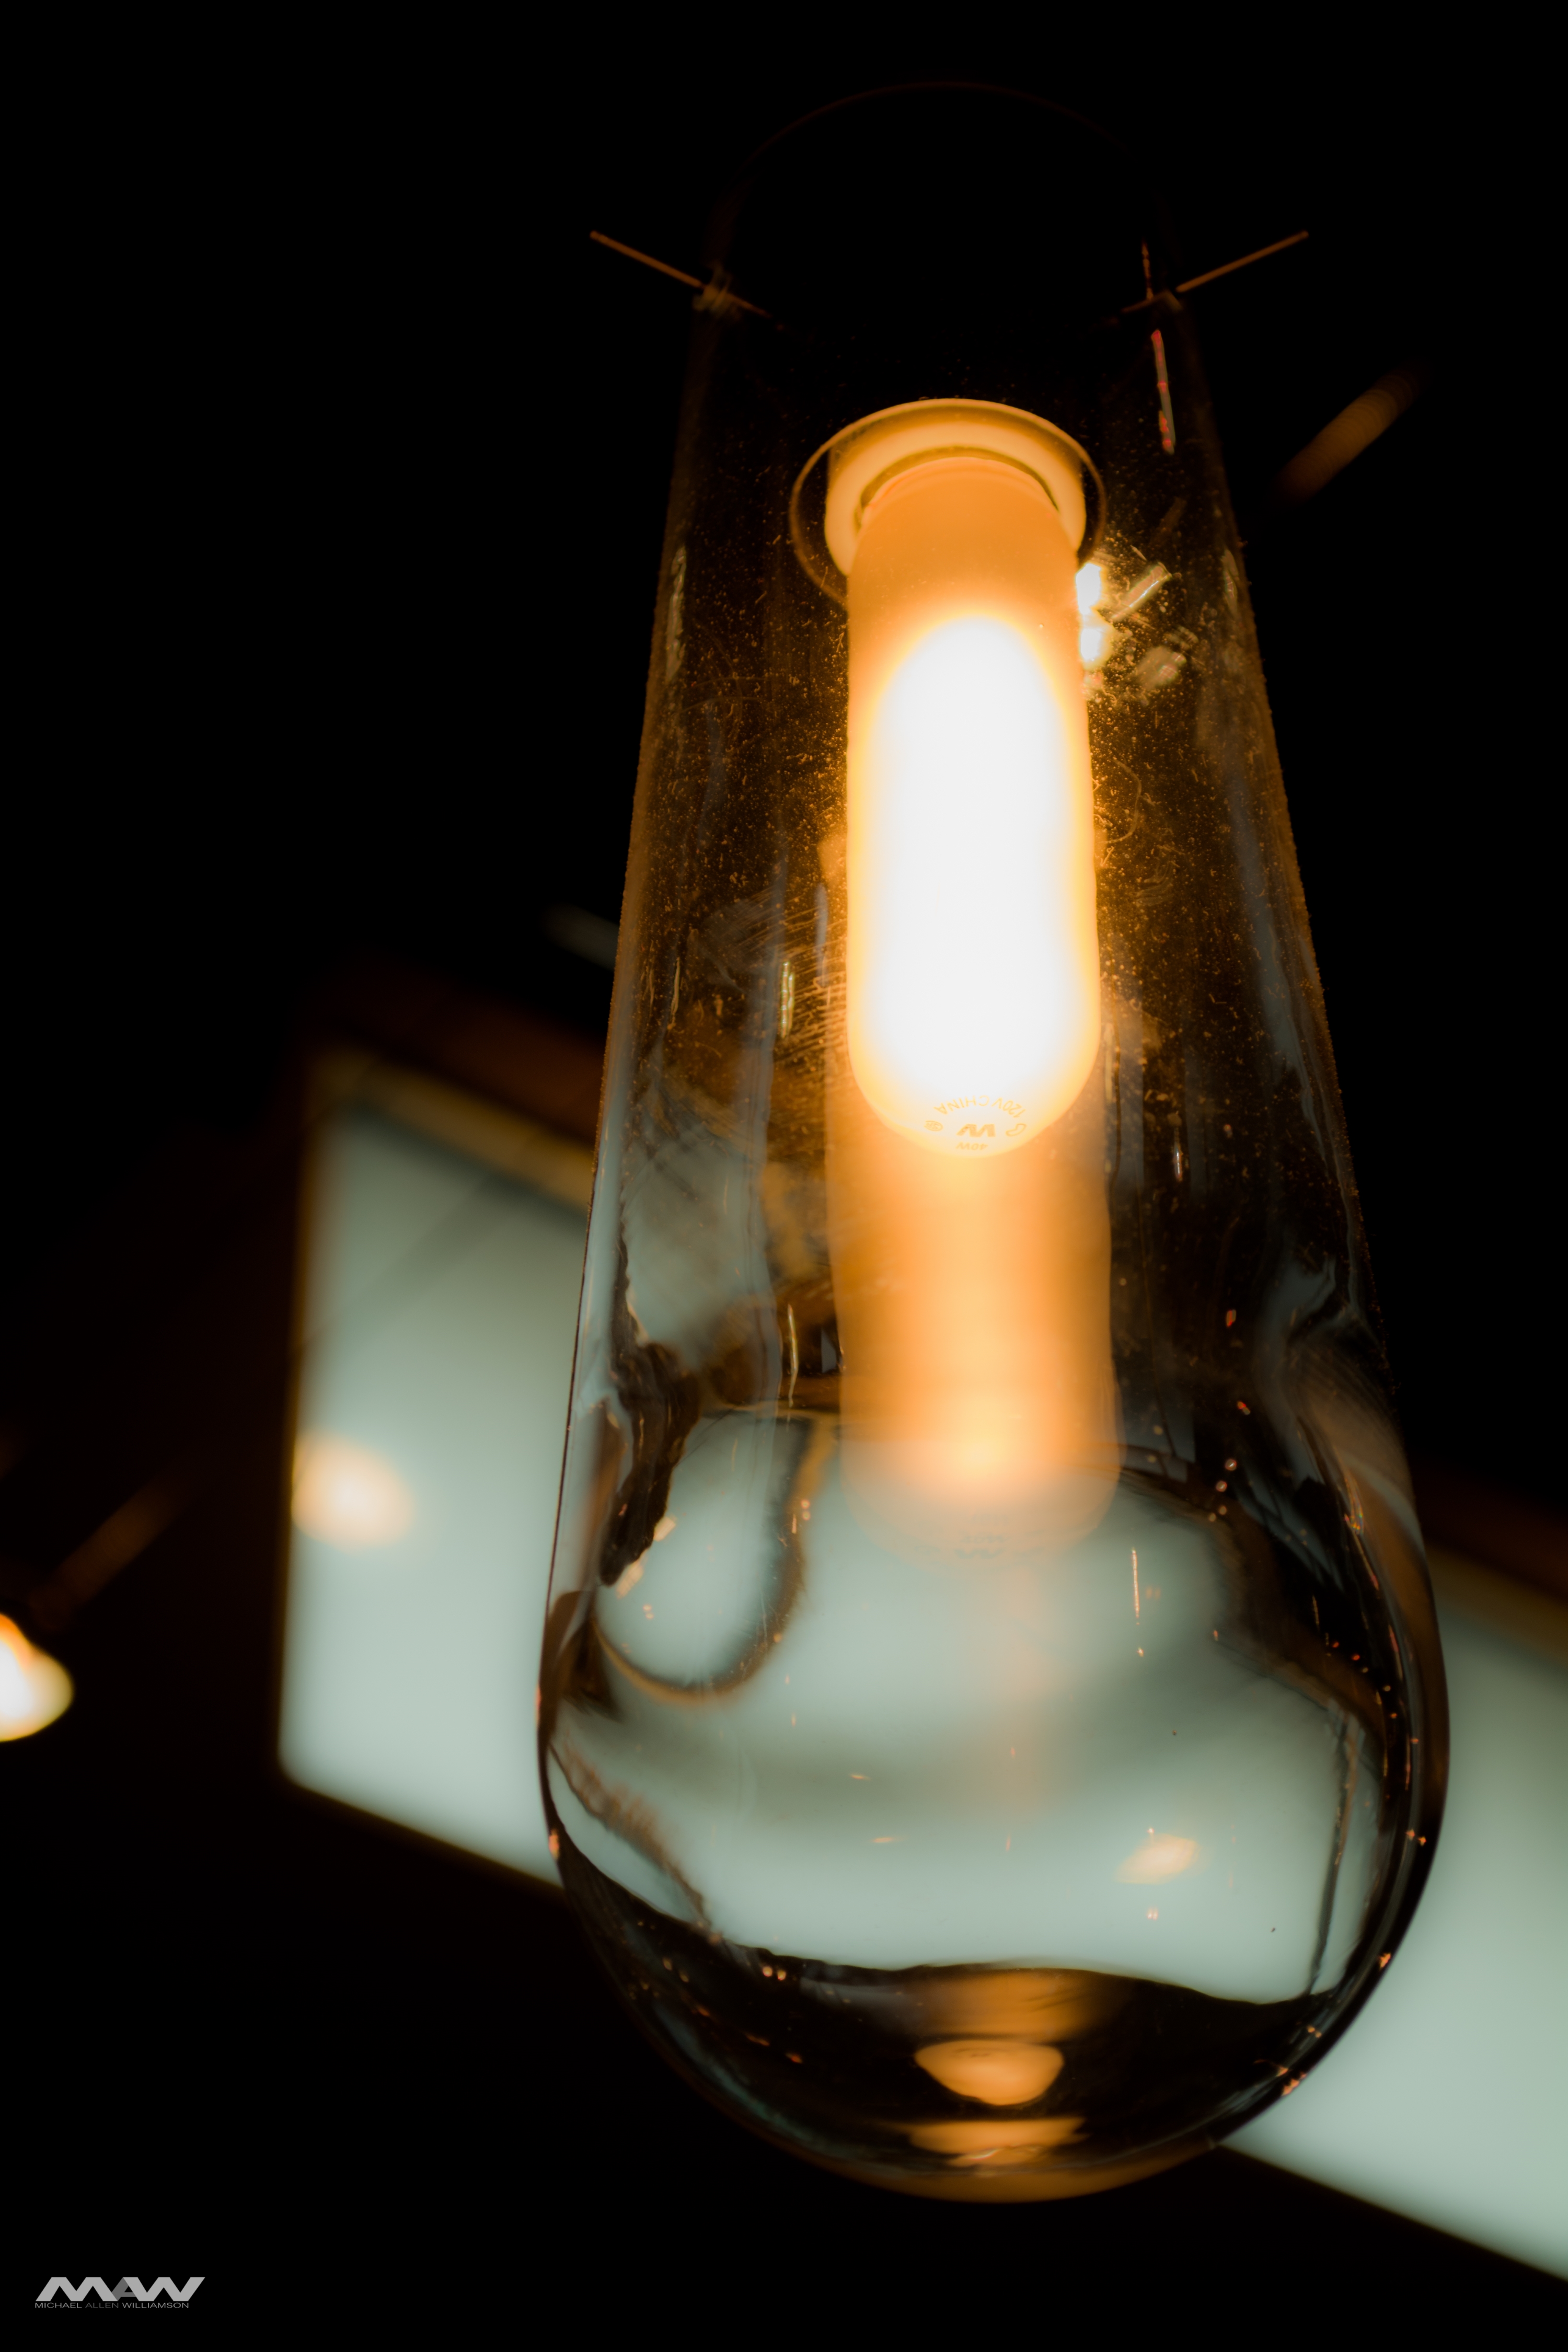 A glowing light bulb